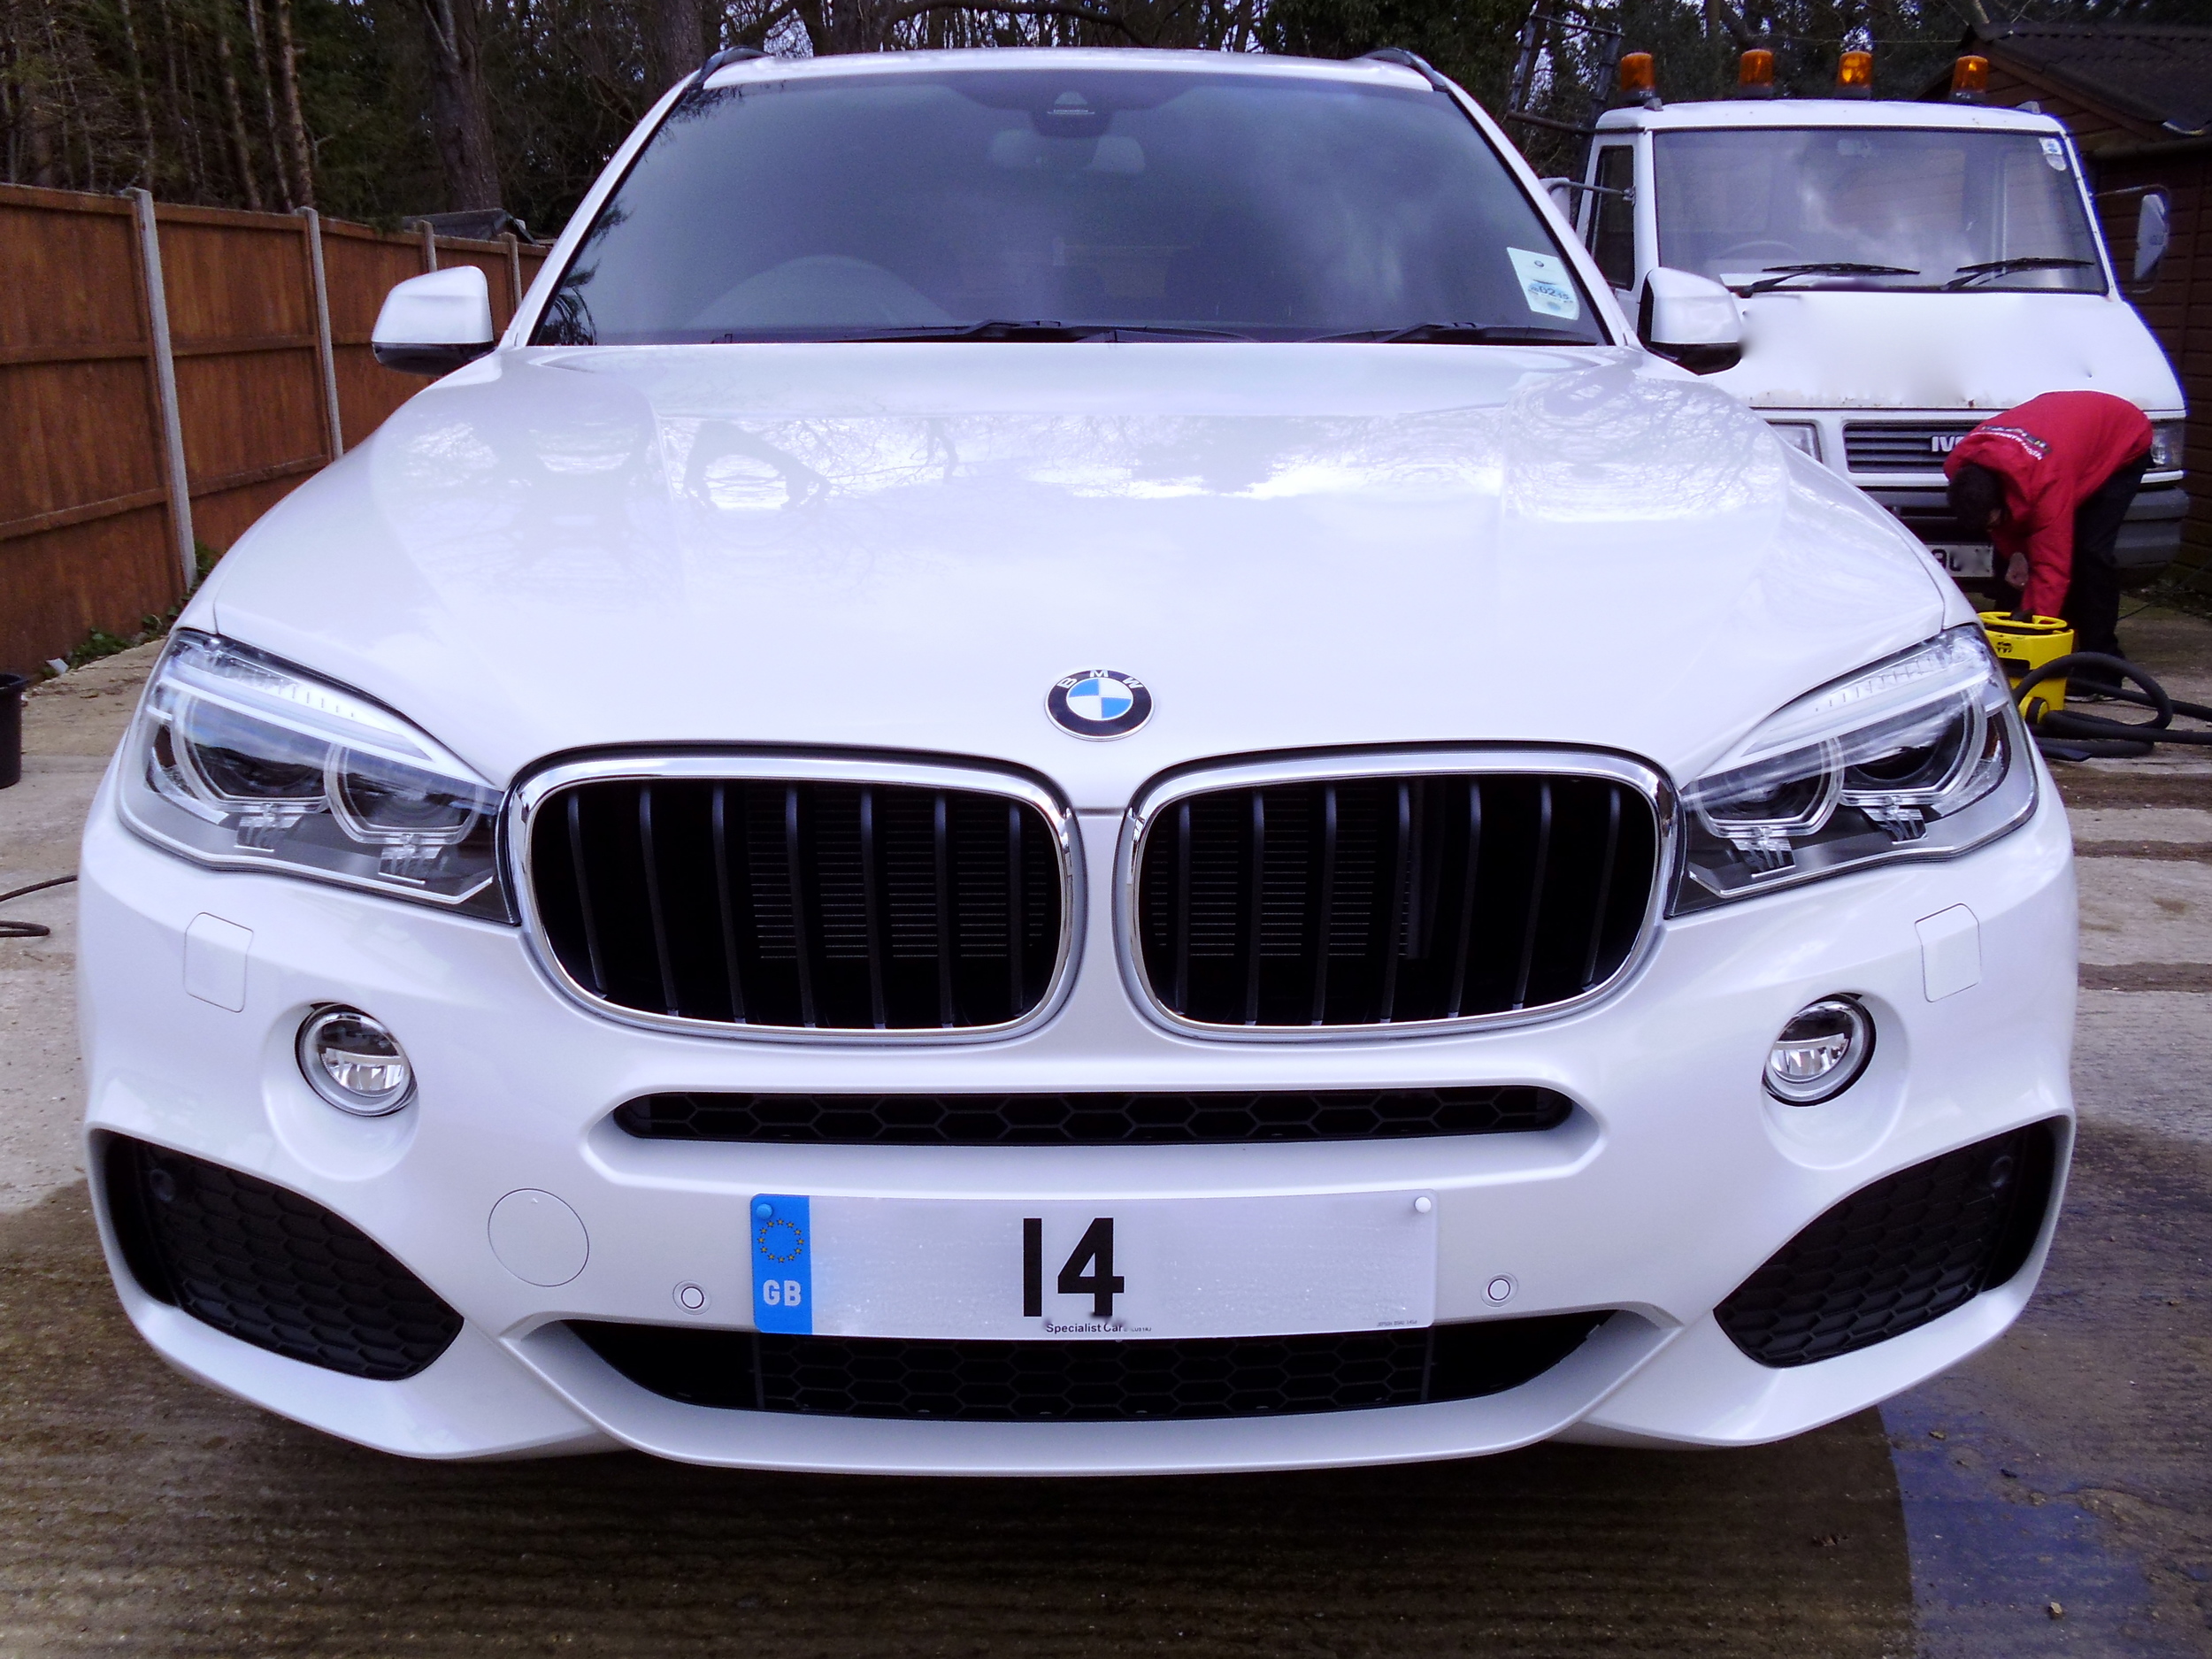 2014 BMW X5 M